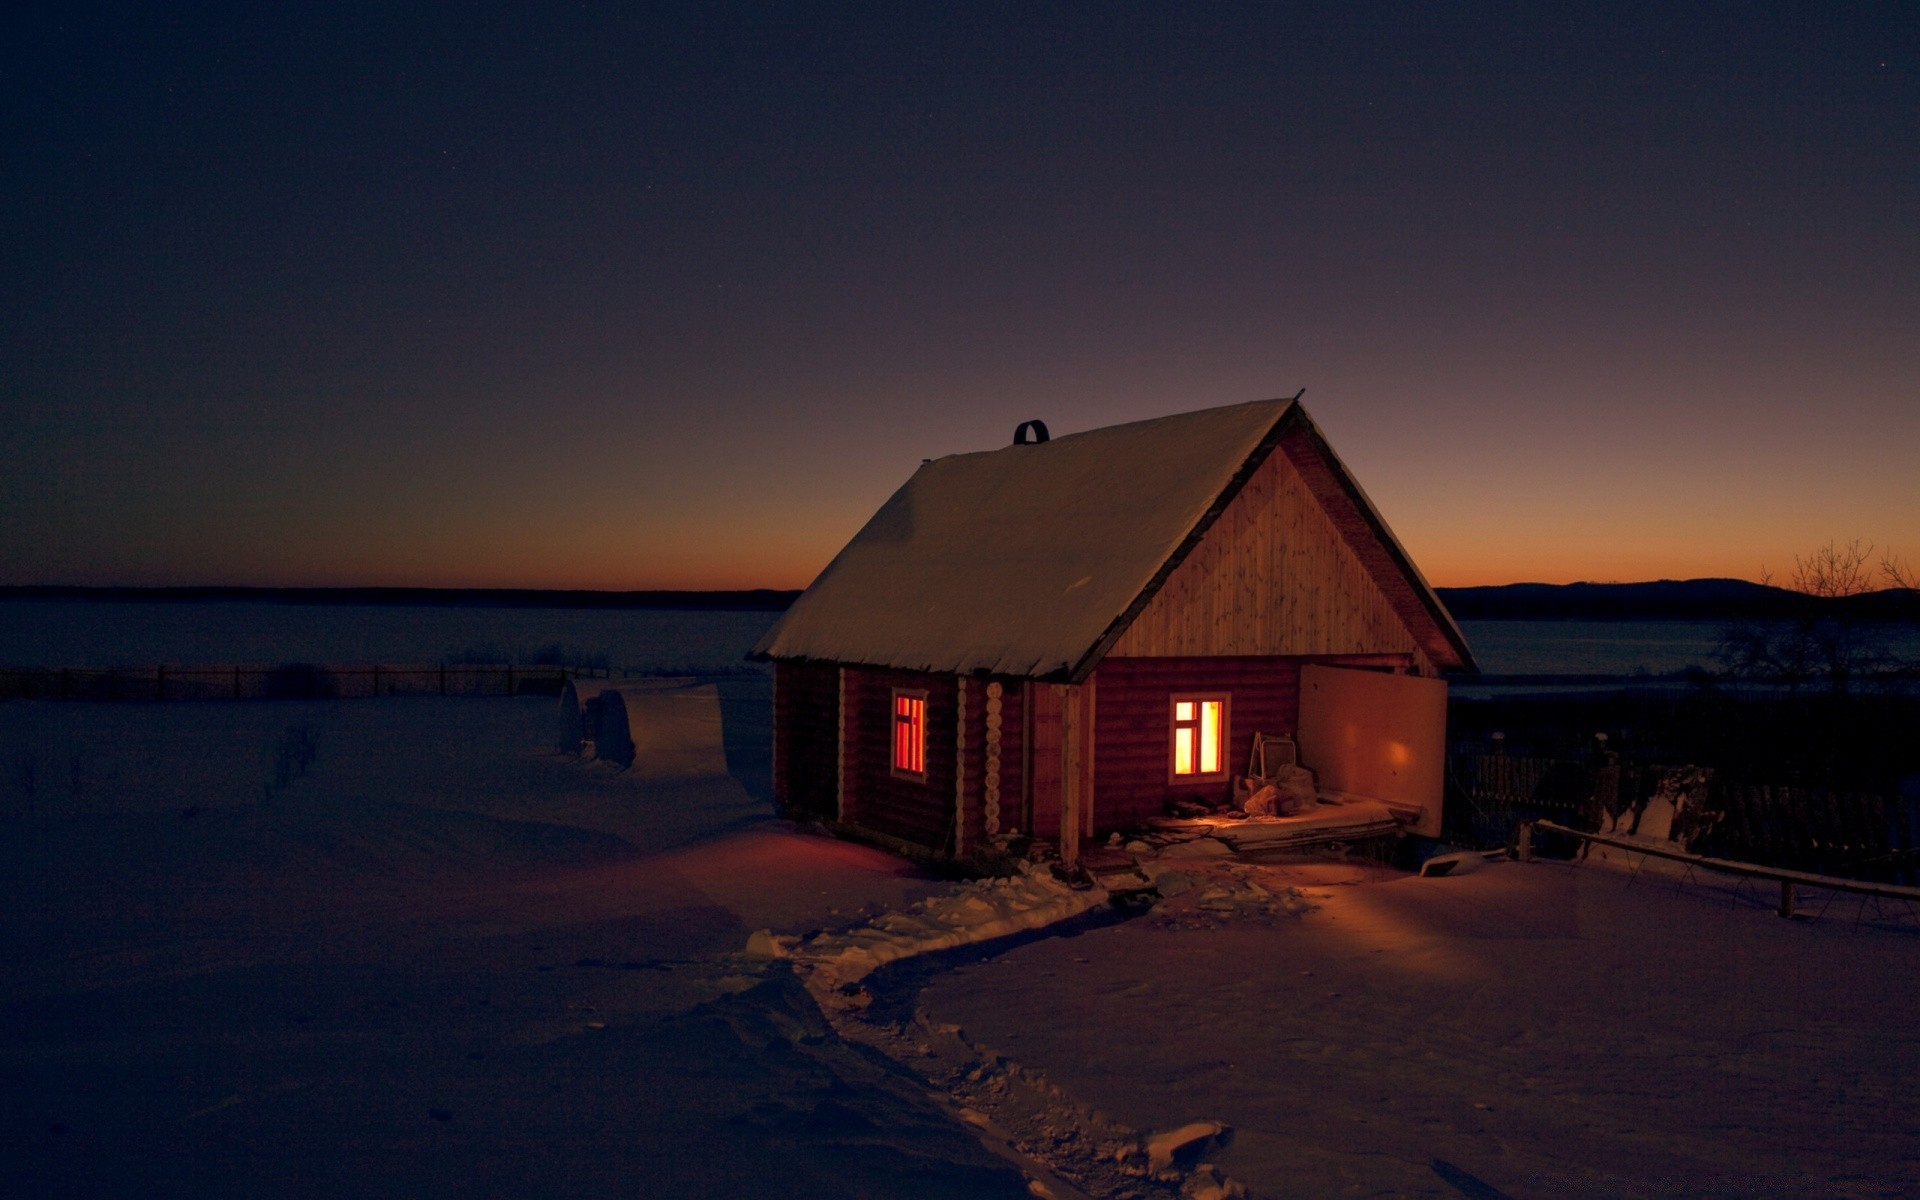 winter sunset water bungalow dawn beach evening home hut light house ocean dusk travel landscape barn